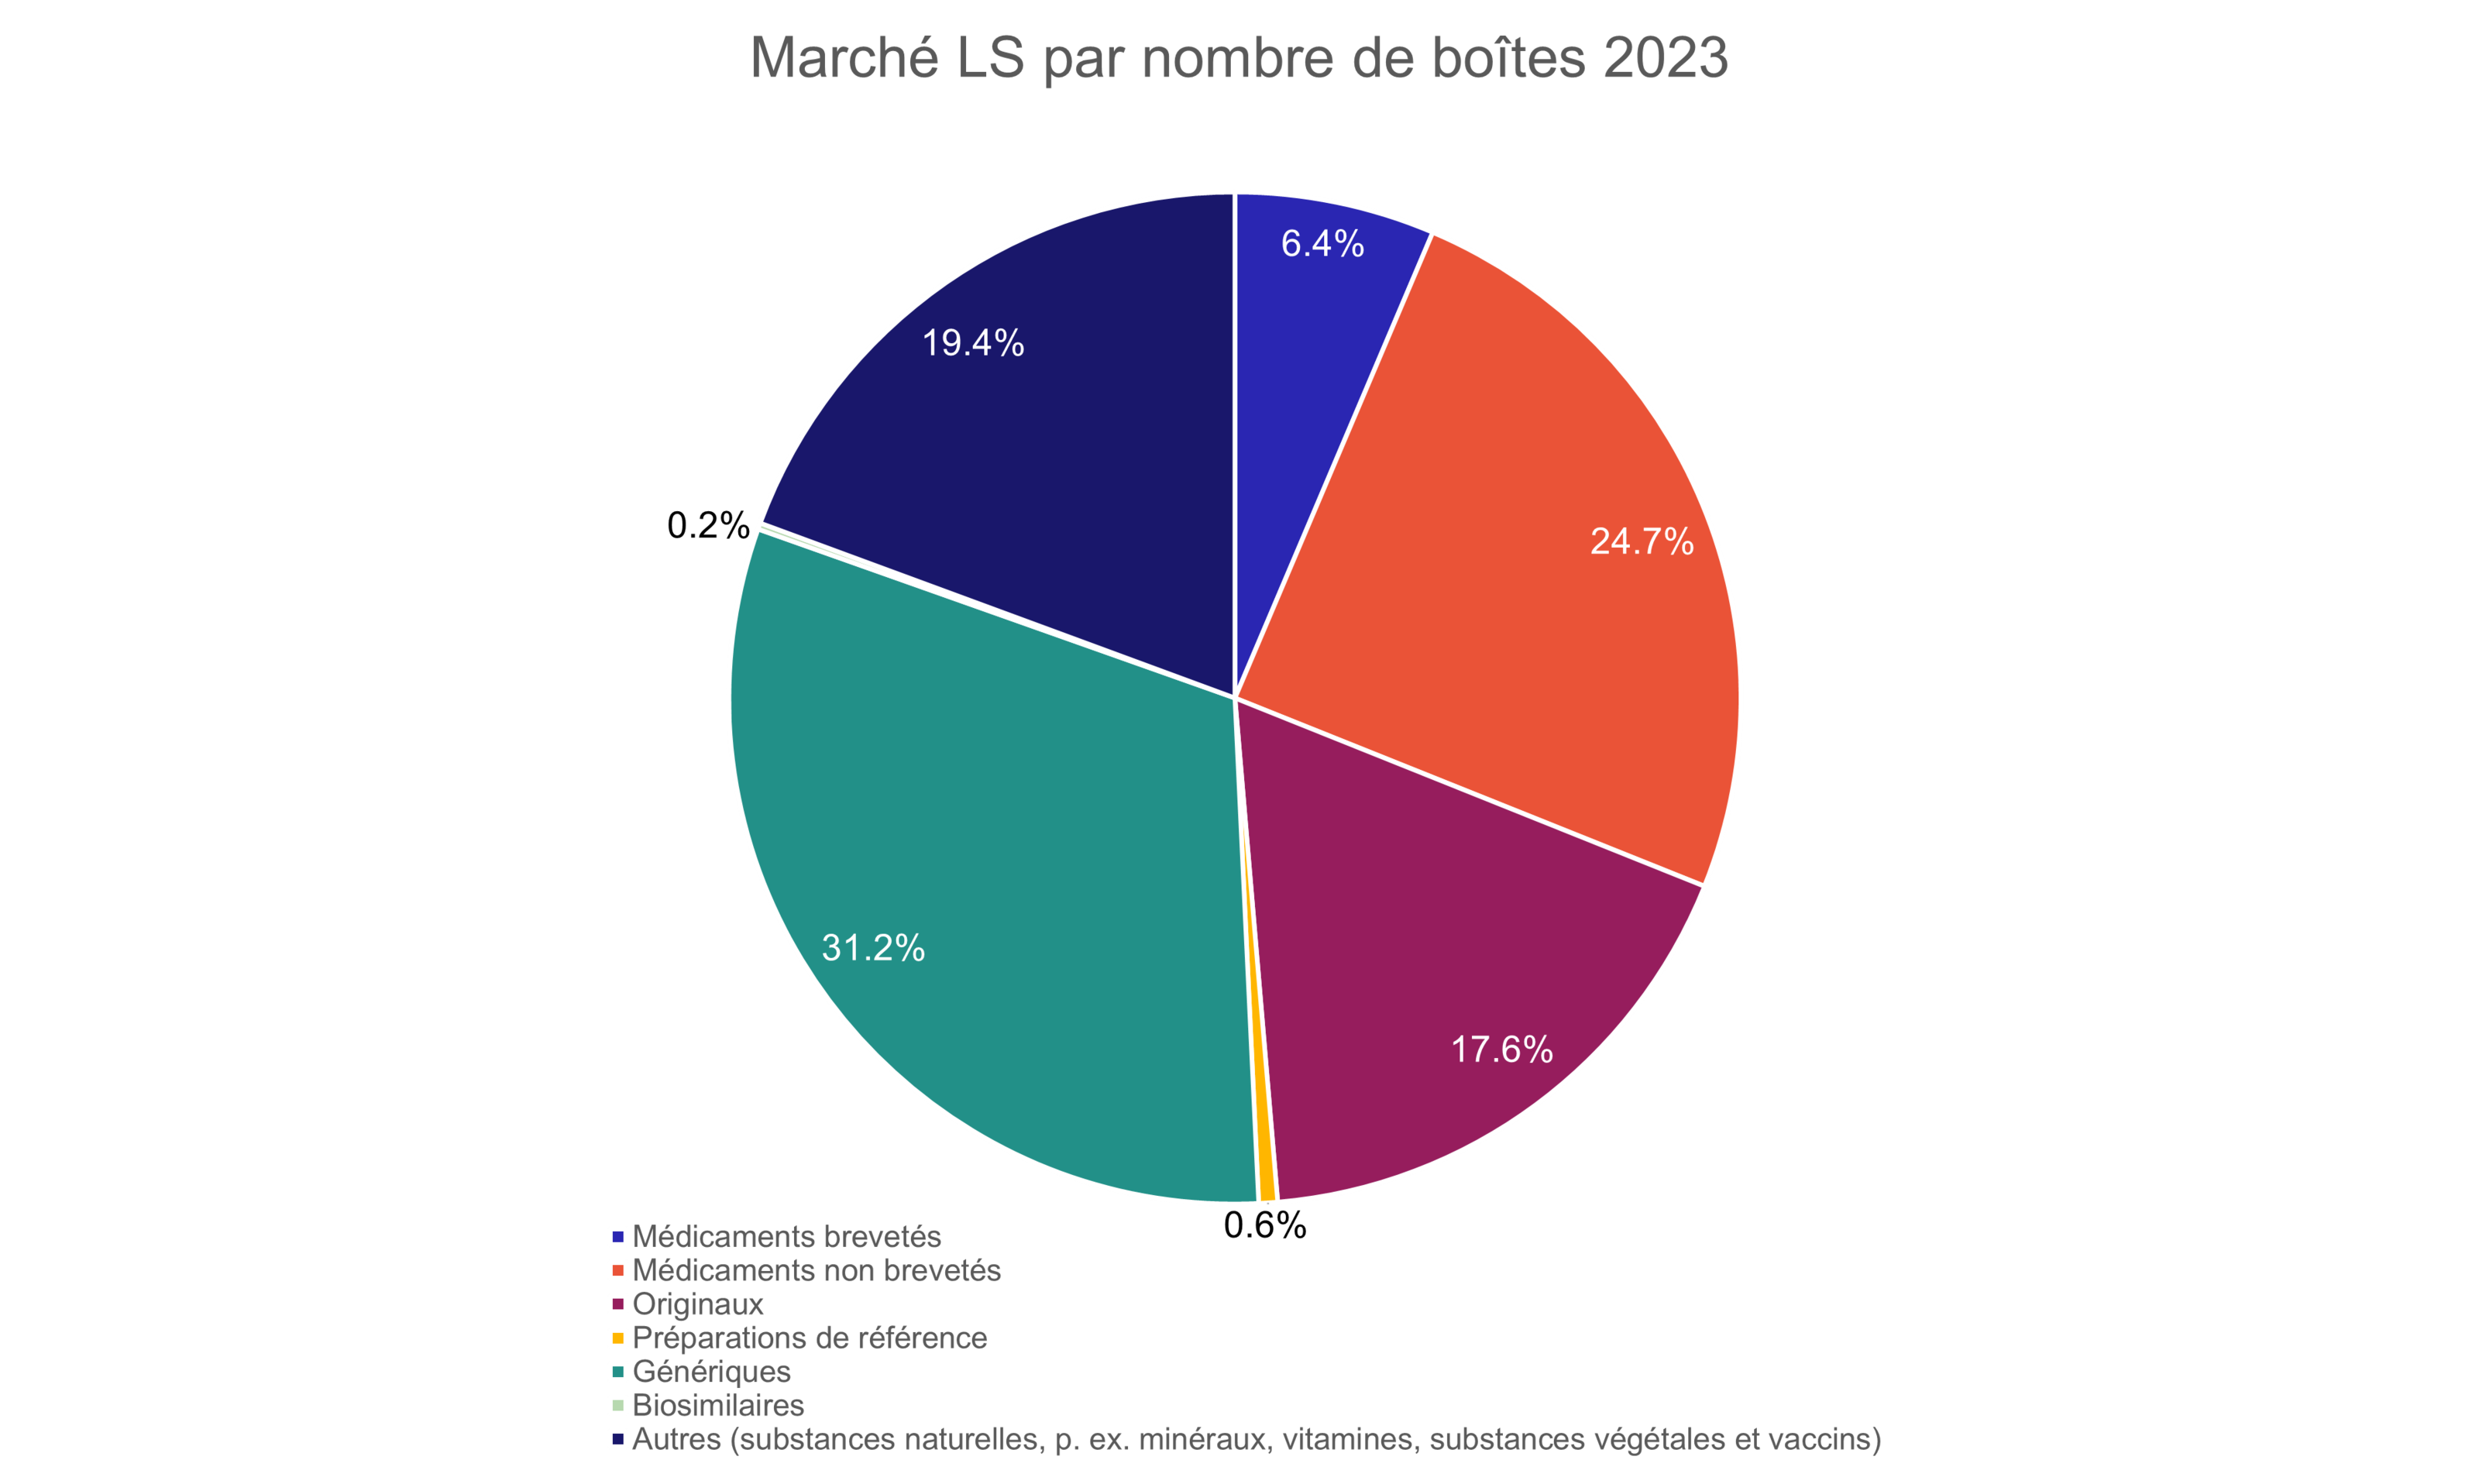 Figure 2: Marché LS selon le nombre de boîtes en 2023. Source: IQVIA. 